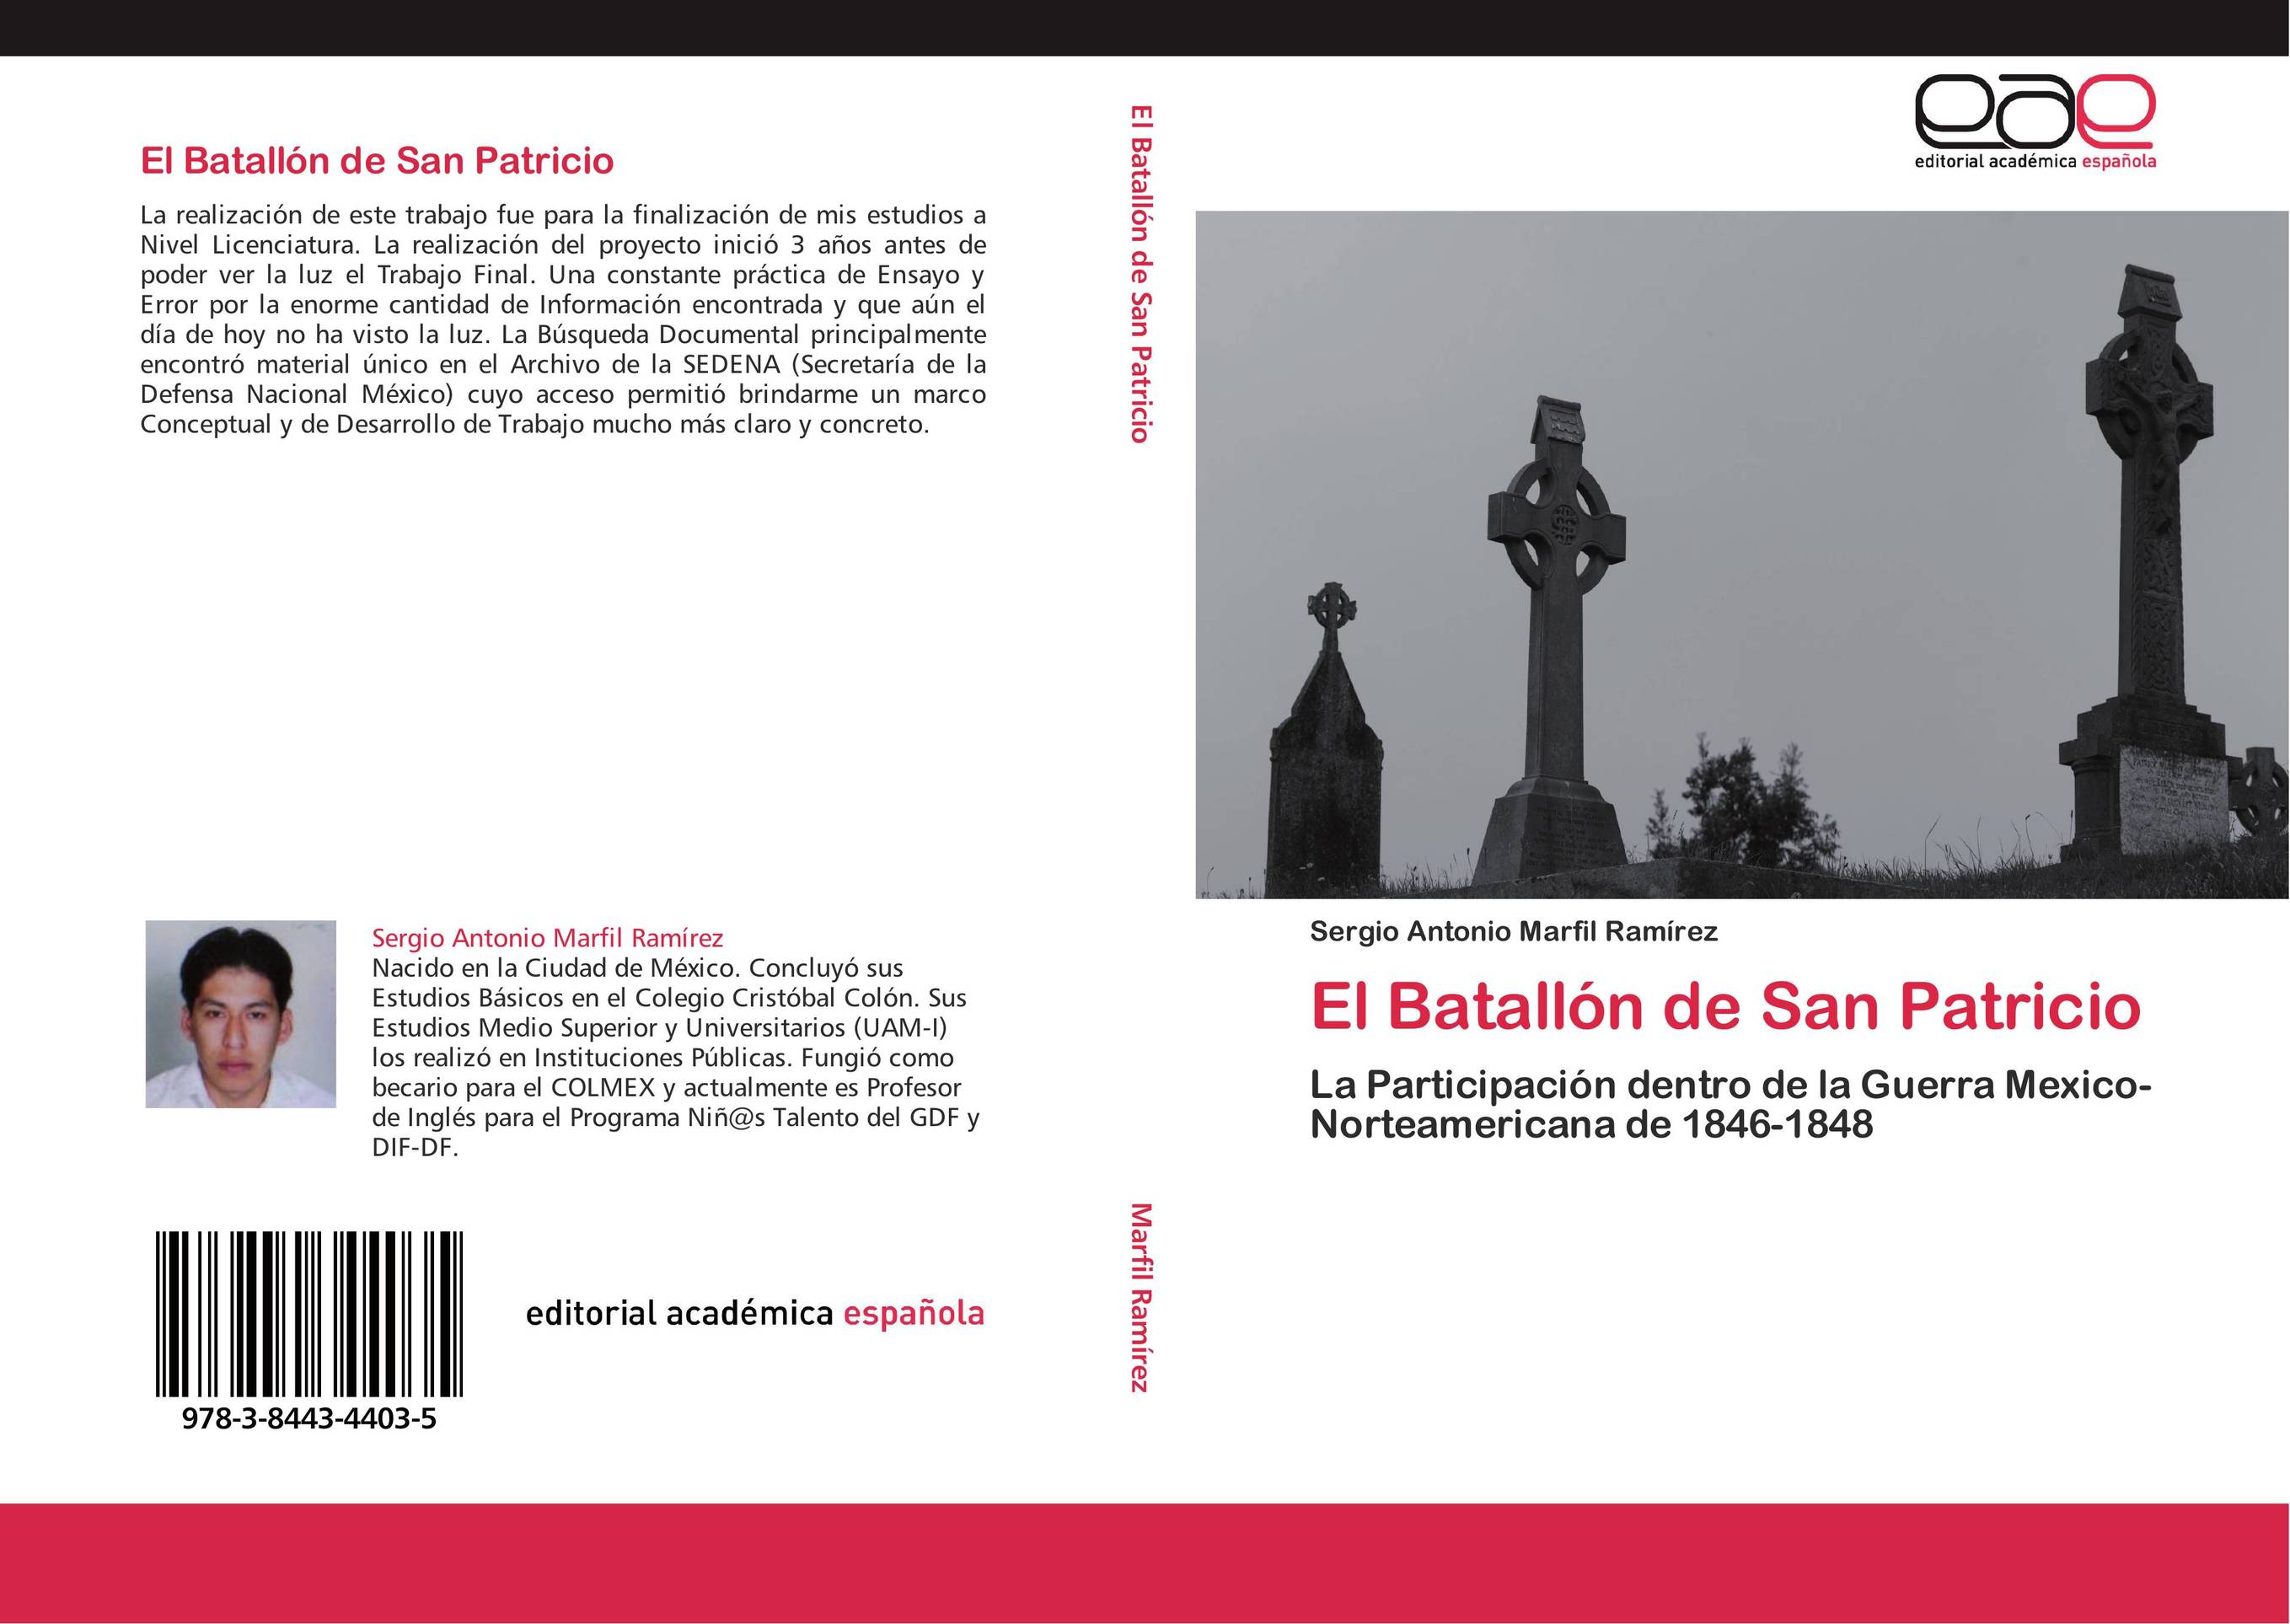 El Batallón de San Patricio